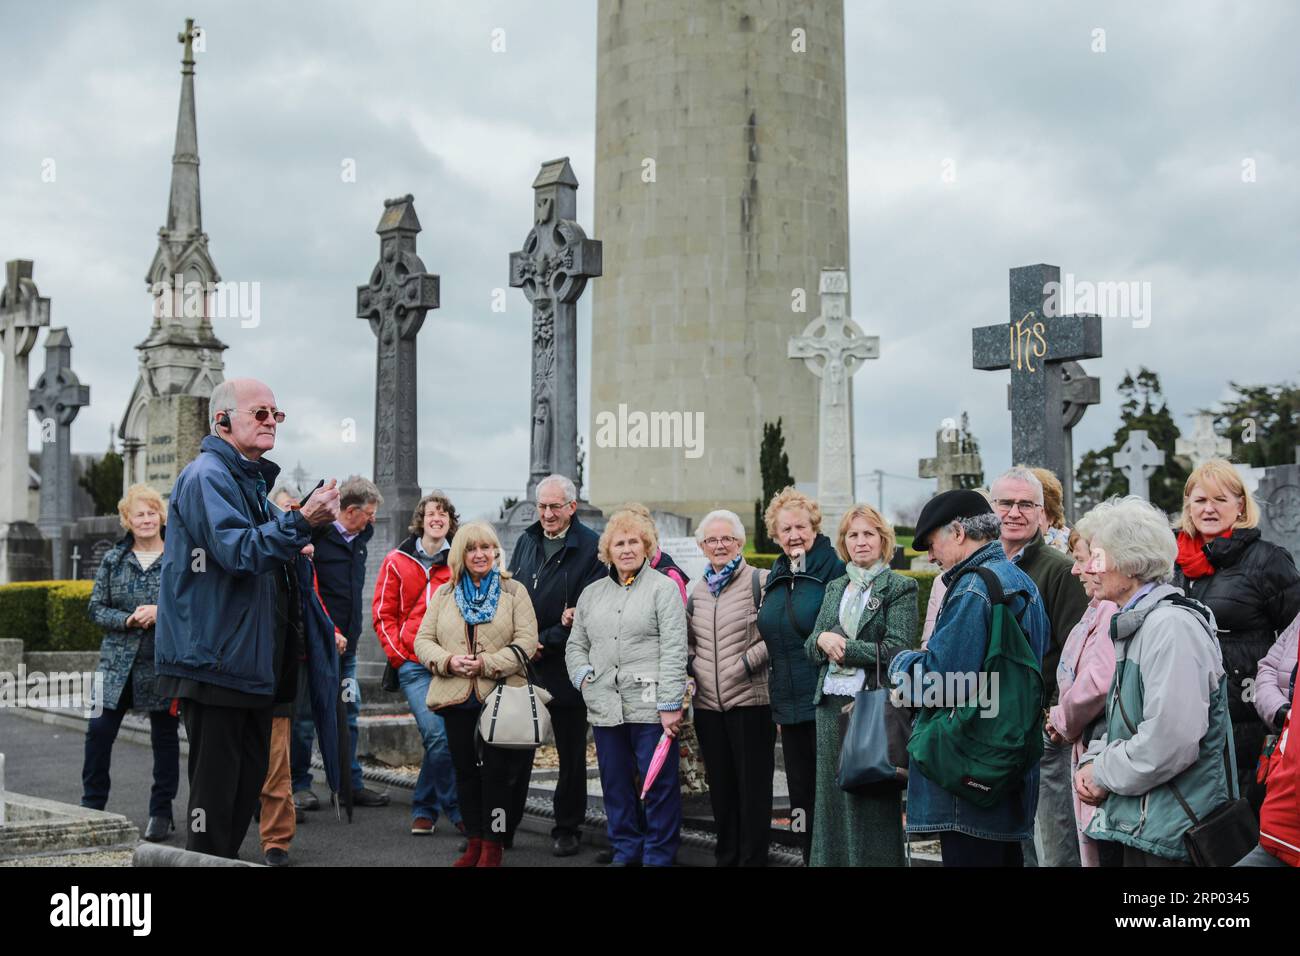 (180415) -- DUBLIN, 15 avril 2018 () -- des touristes visitent la Tour O Connell dans le cimetière Glasnevin à Dublin, Irlande, le 14 avril 2018. La tour la plus haute d'Irlande, O Connell Tower, a été rouverte au public samedi après 47 ans de fermeture après un attentat à la bombe dont l'auteur n'a pas été officiellement identifié jusqu'à présent. () (zxj) IRLANDE-DUBLIN-LA PLUS HAUTE TOUR-RÉOUVERTURE Xinhua PUBLICATIONxNOTxINxCHN Banque D'Images